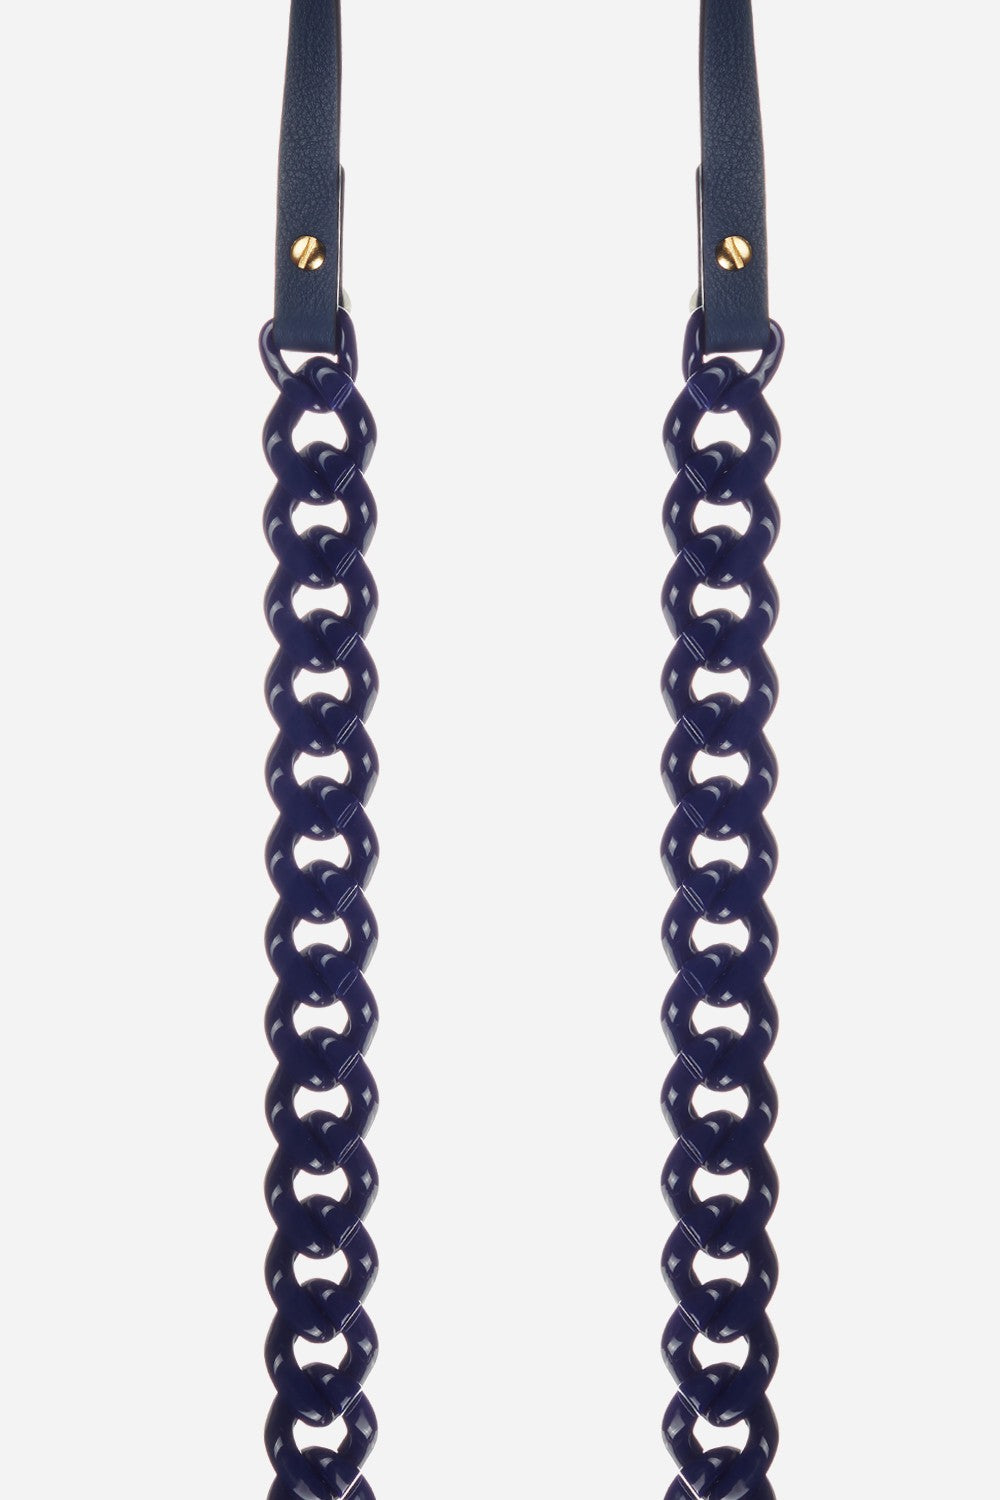 Long Giorgia Blue Chain 120 cm